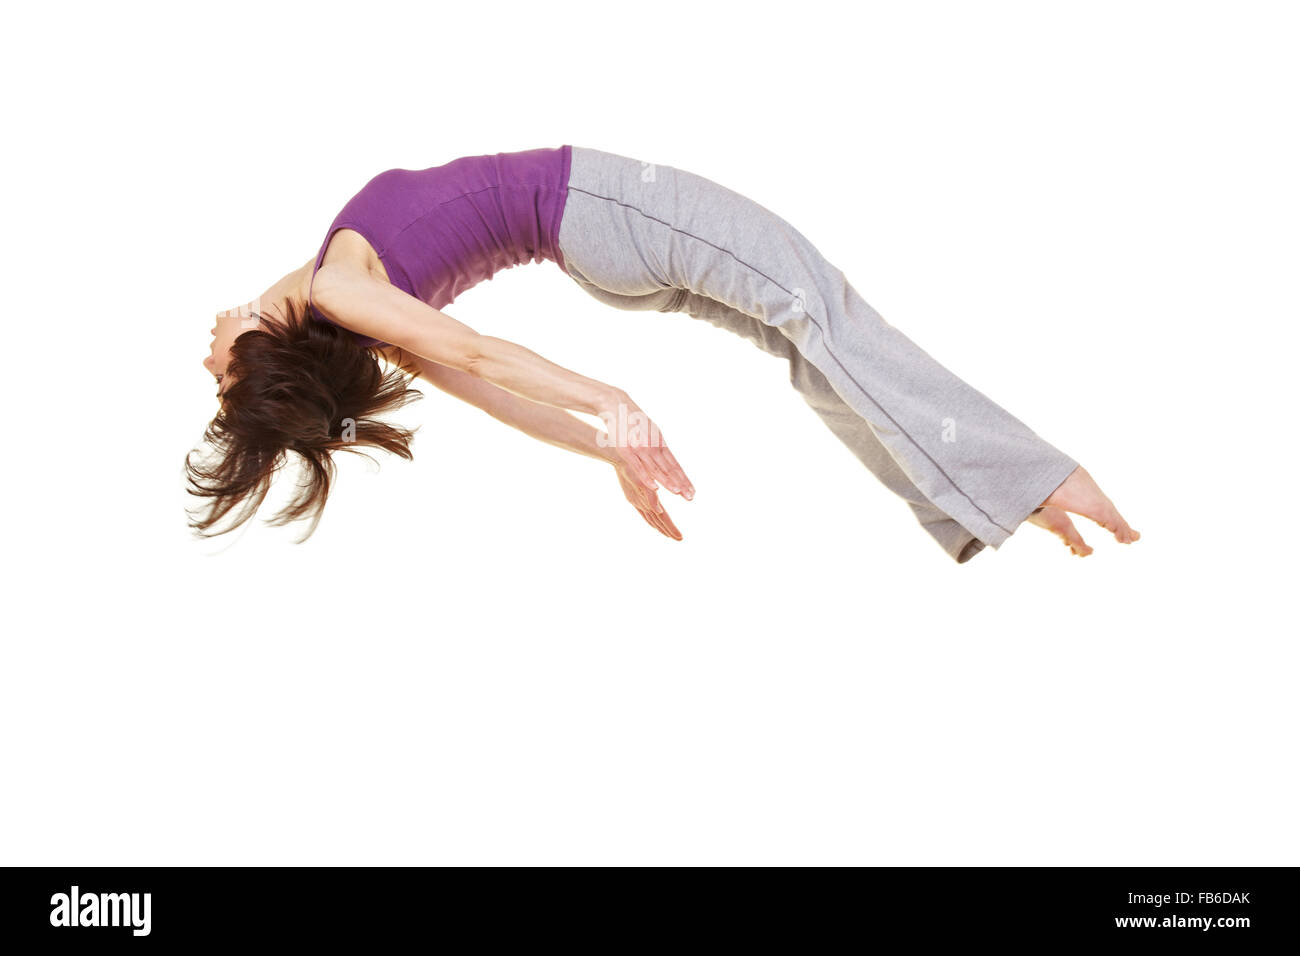 Jeune femme souple faisant un somersault saut Banque D'Images